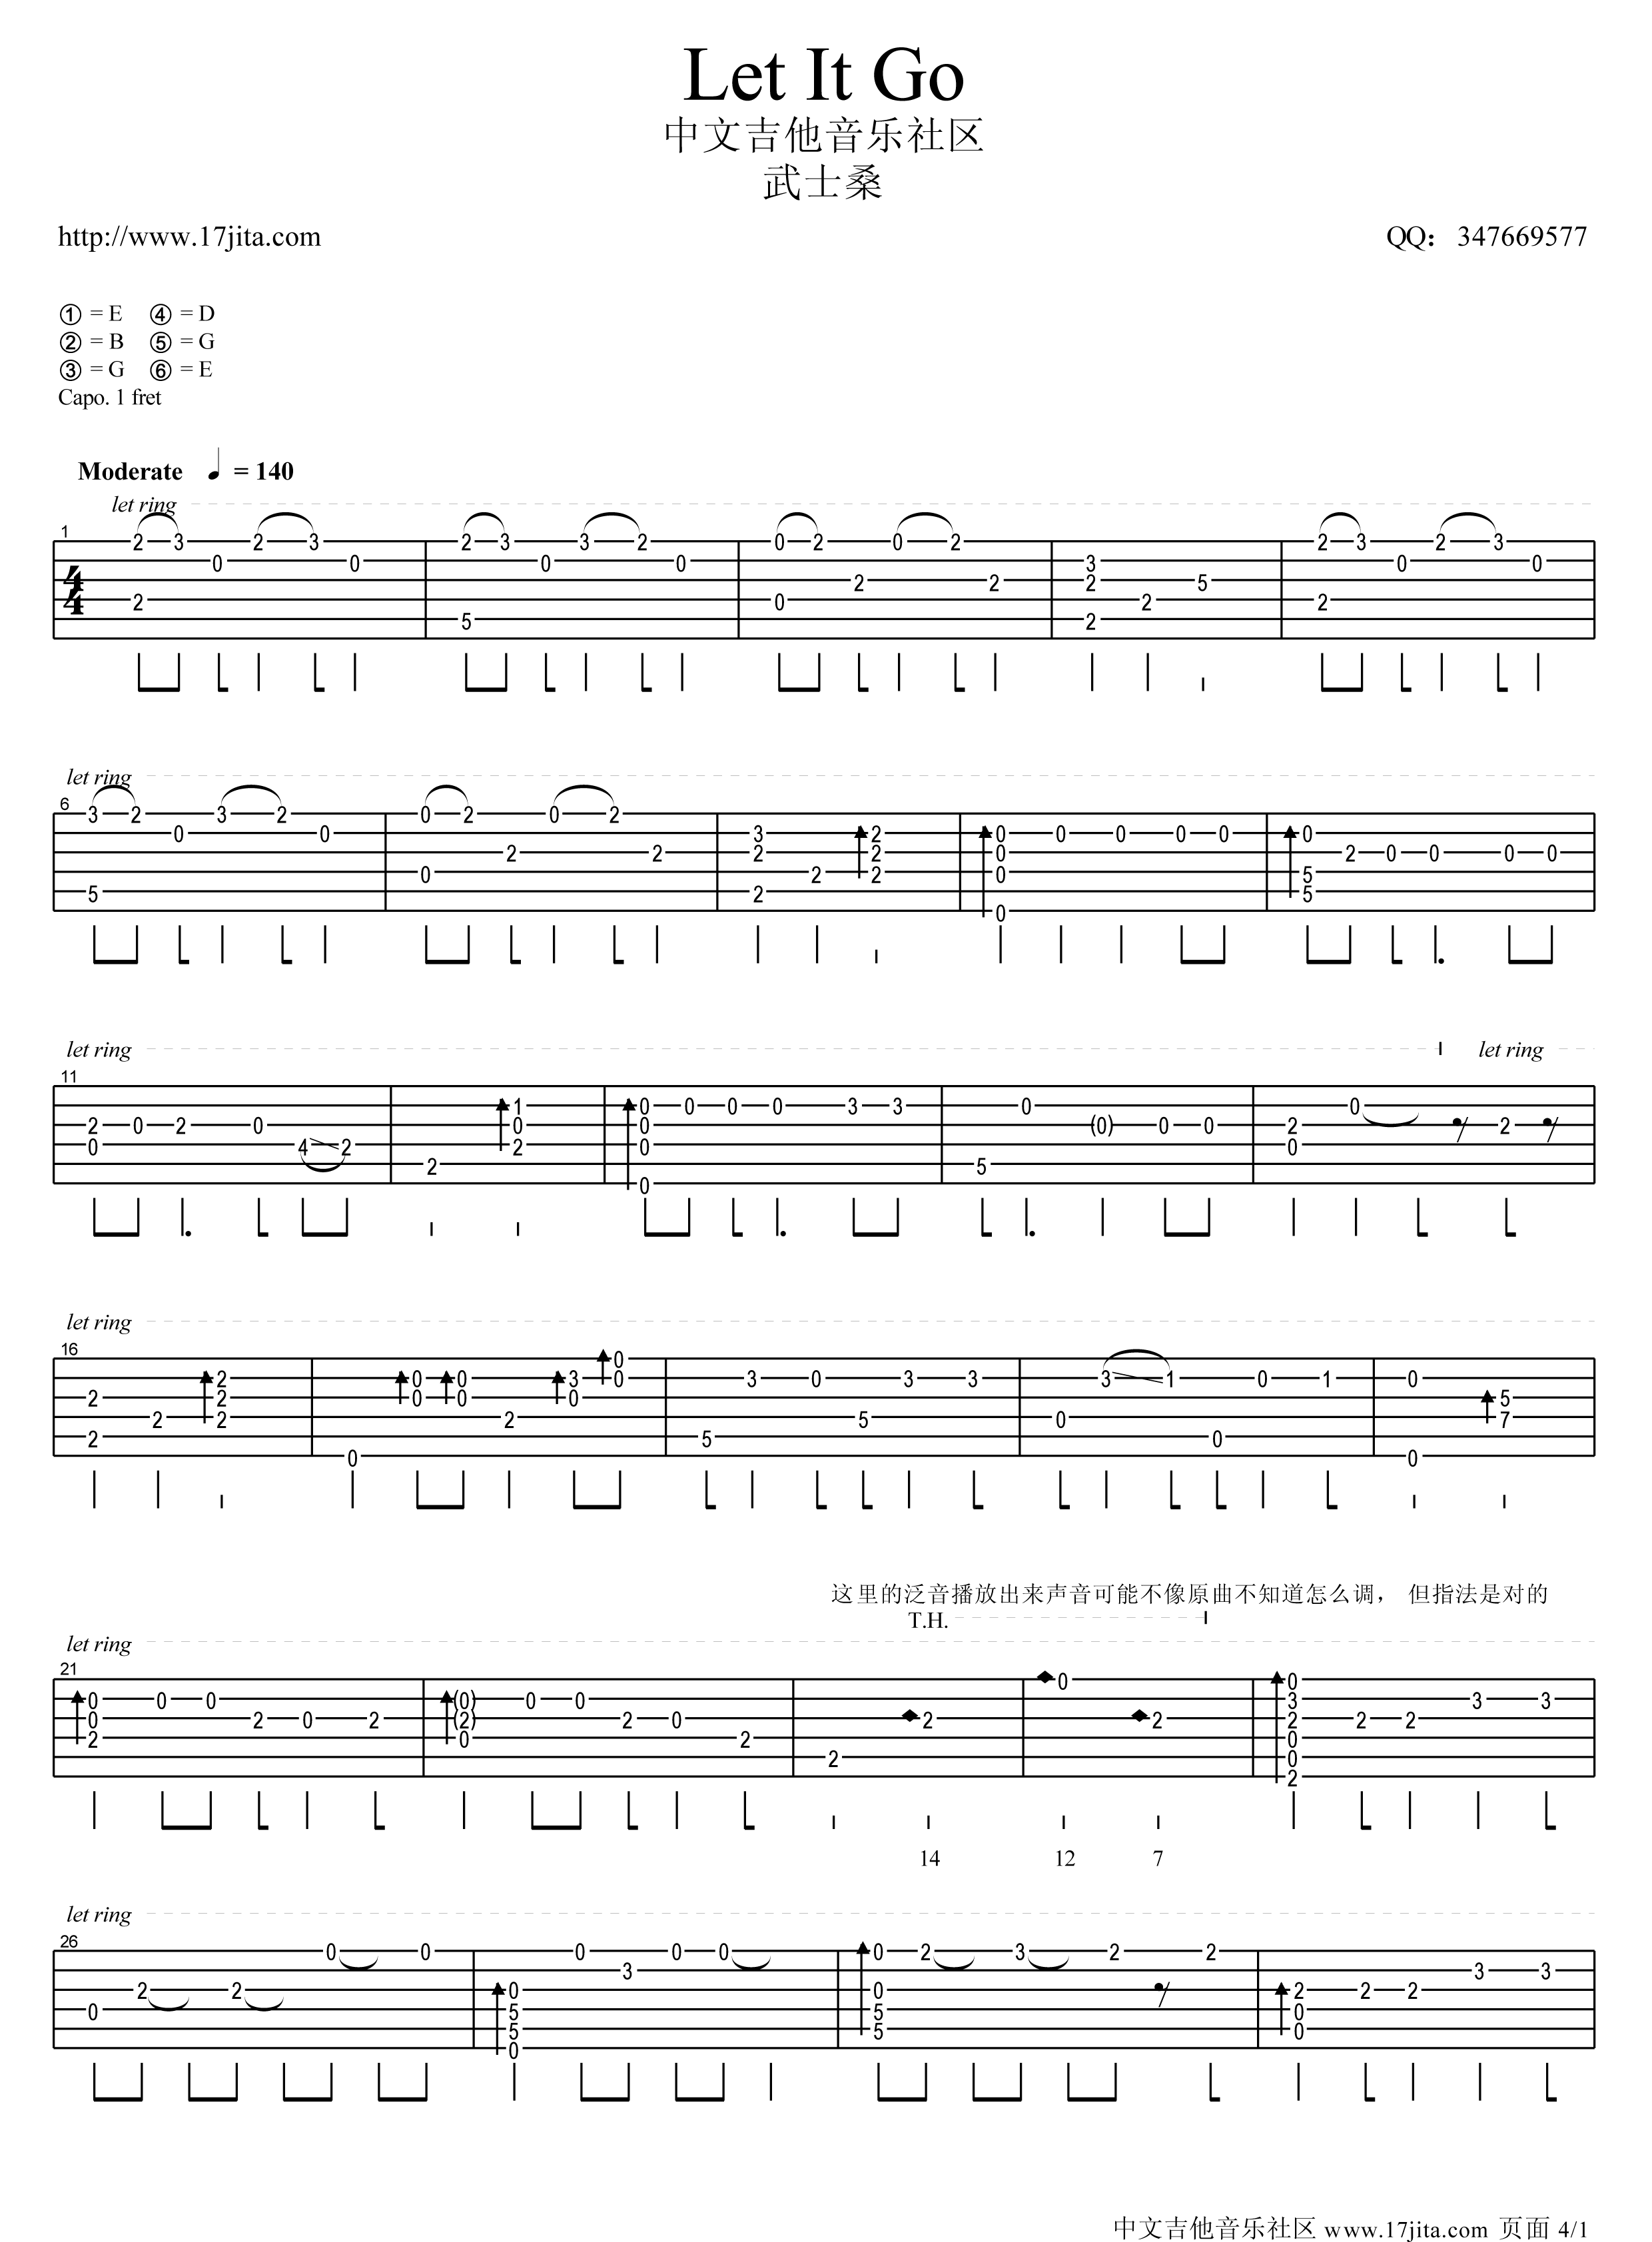 LetItGo高清版指弹吉他谱第(1)页